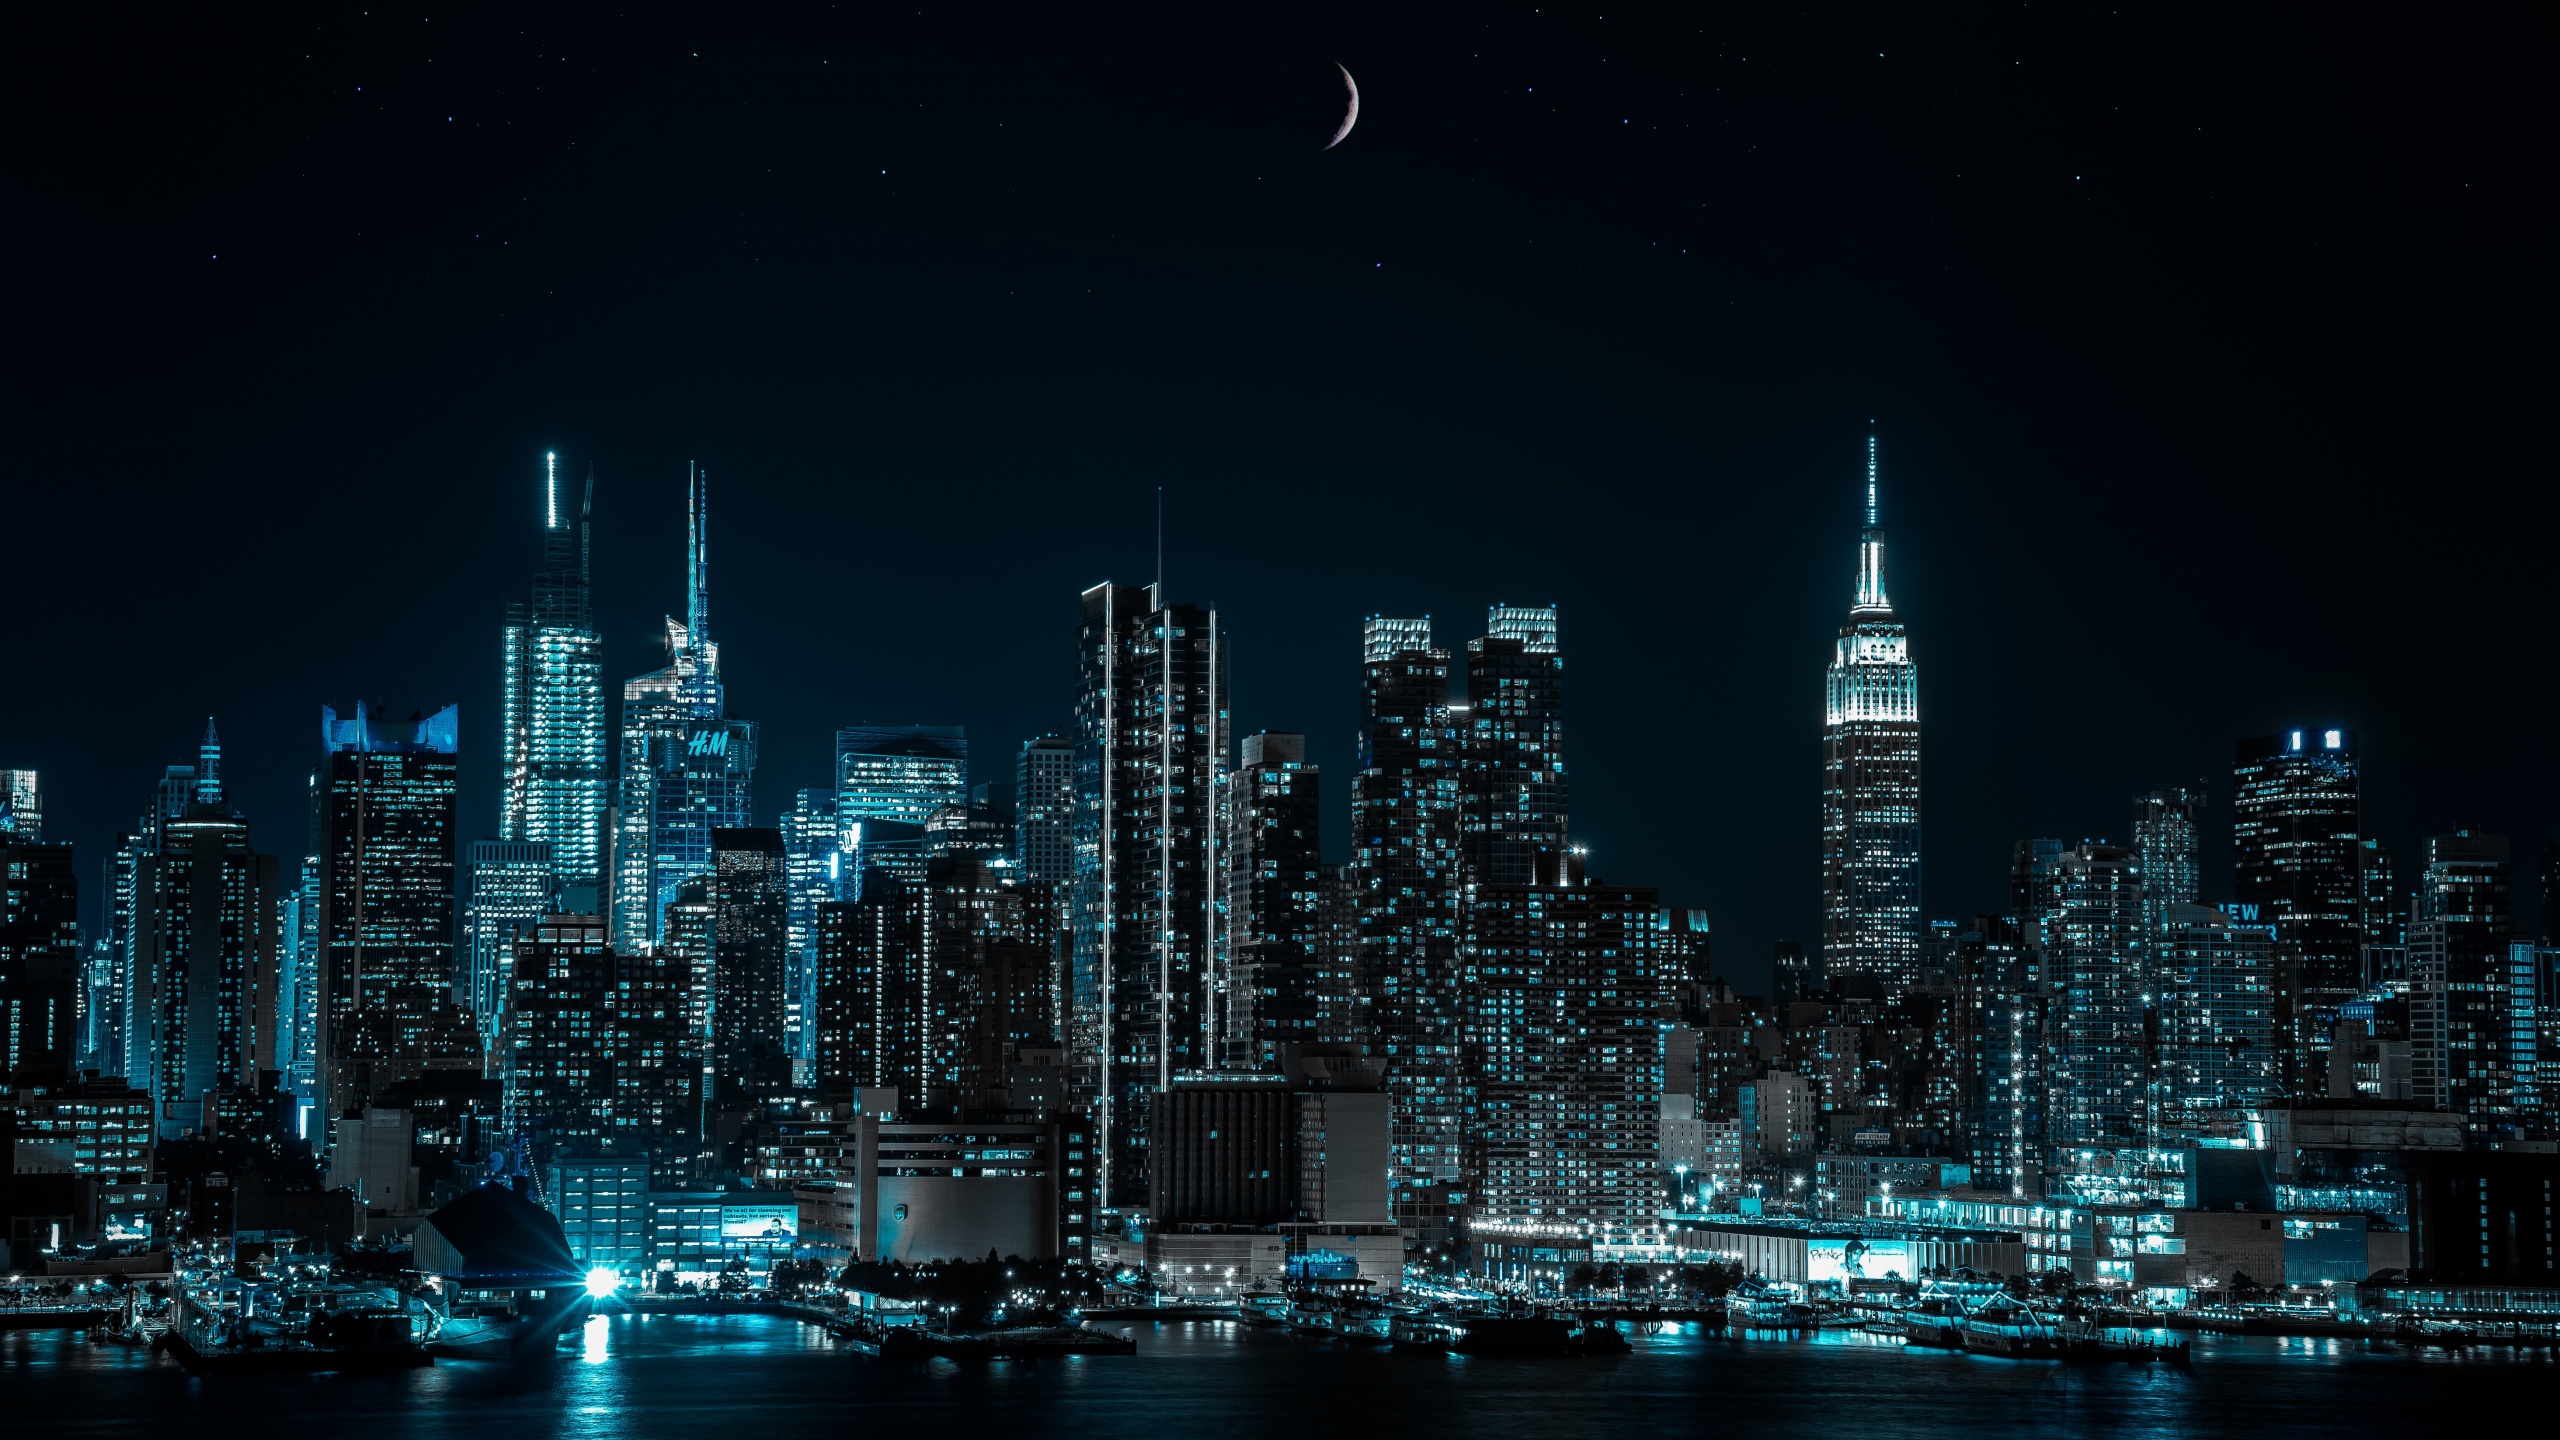 Thưởng thức không gian New York đêm lung linh với hình nền độ phân giải 4K chất lượng cao của thành phố vô cùng năng động. Giờ đây bạn có thể đắm chìm trong bầu không khí sôi động của thành phố này chỉ bằng một cái nhìn.